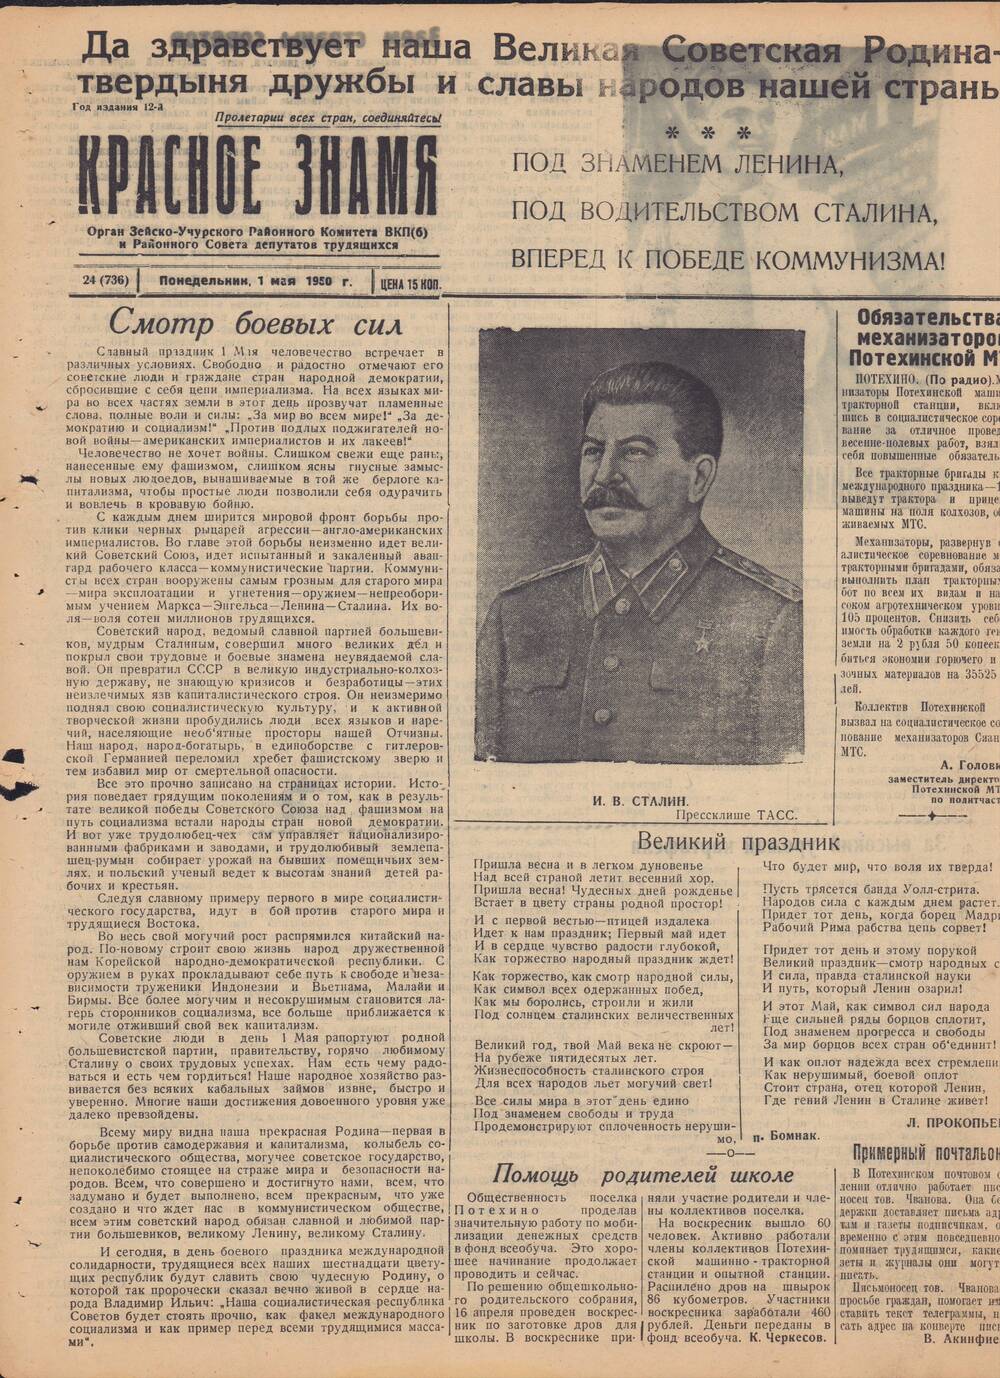 Газета Красное знамя №24 (736) от 1 мая 1950 года.